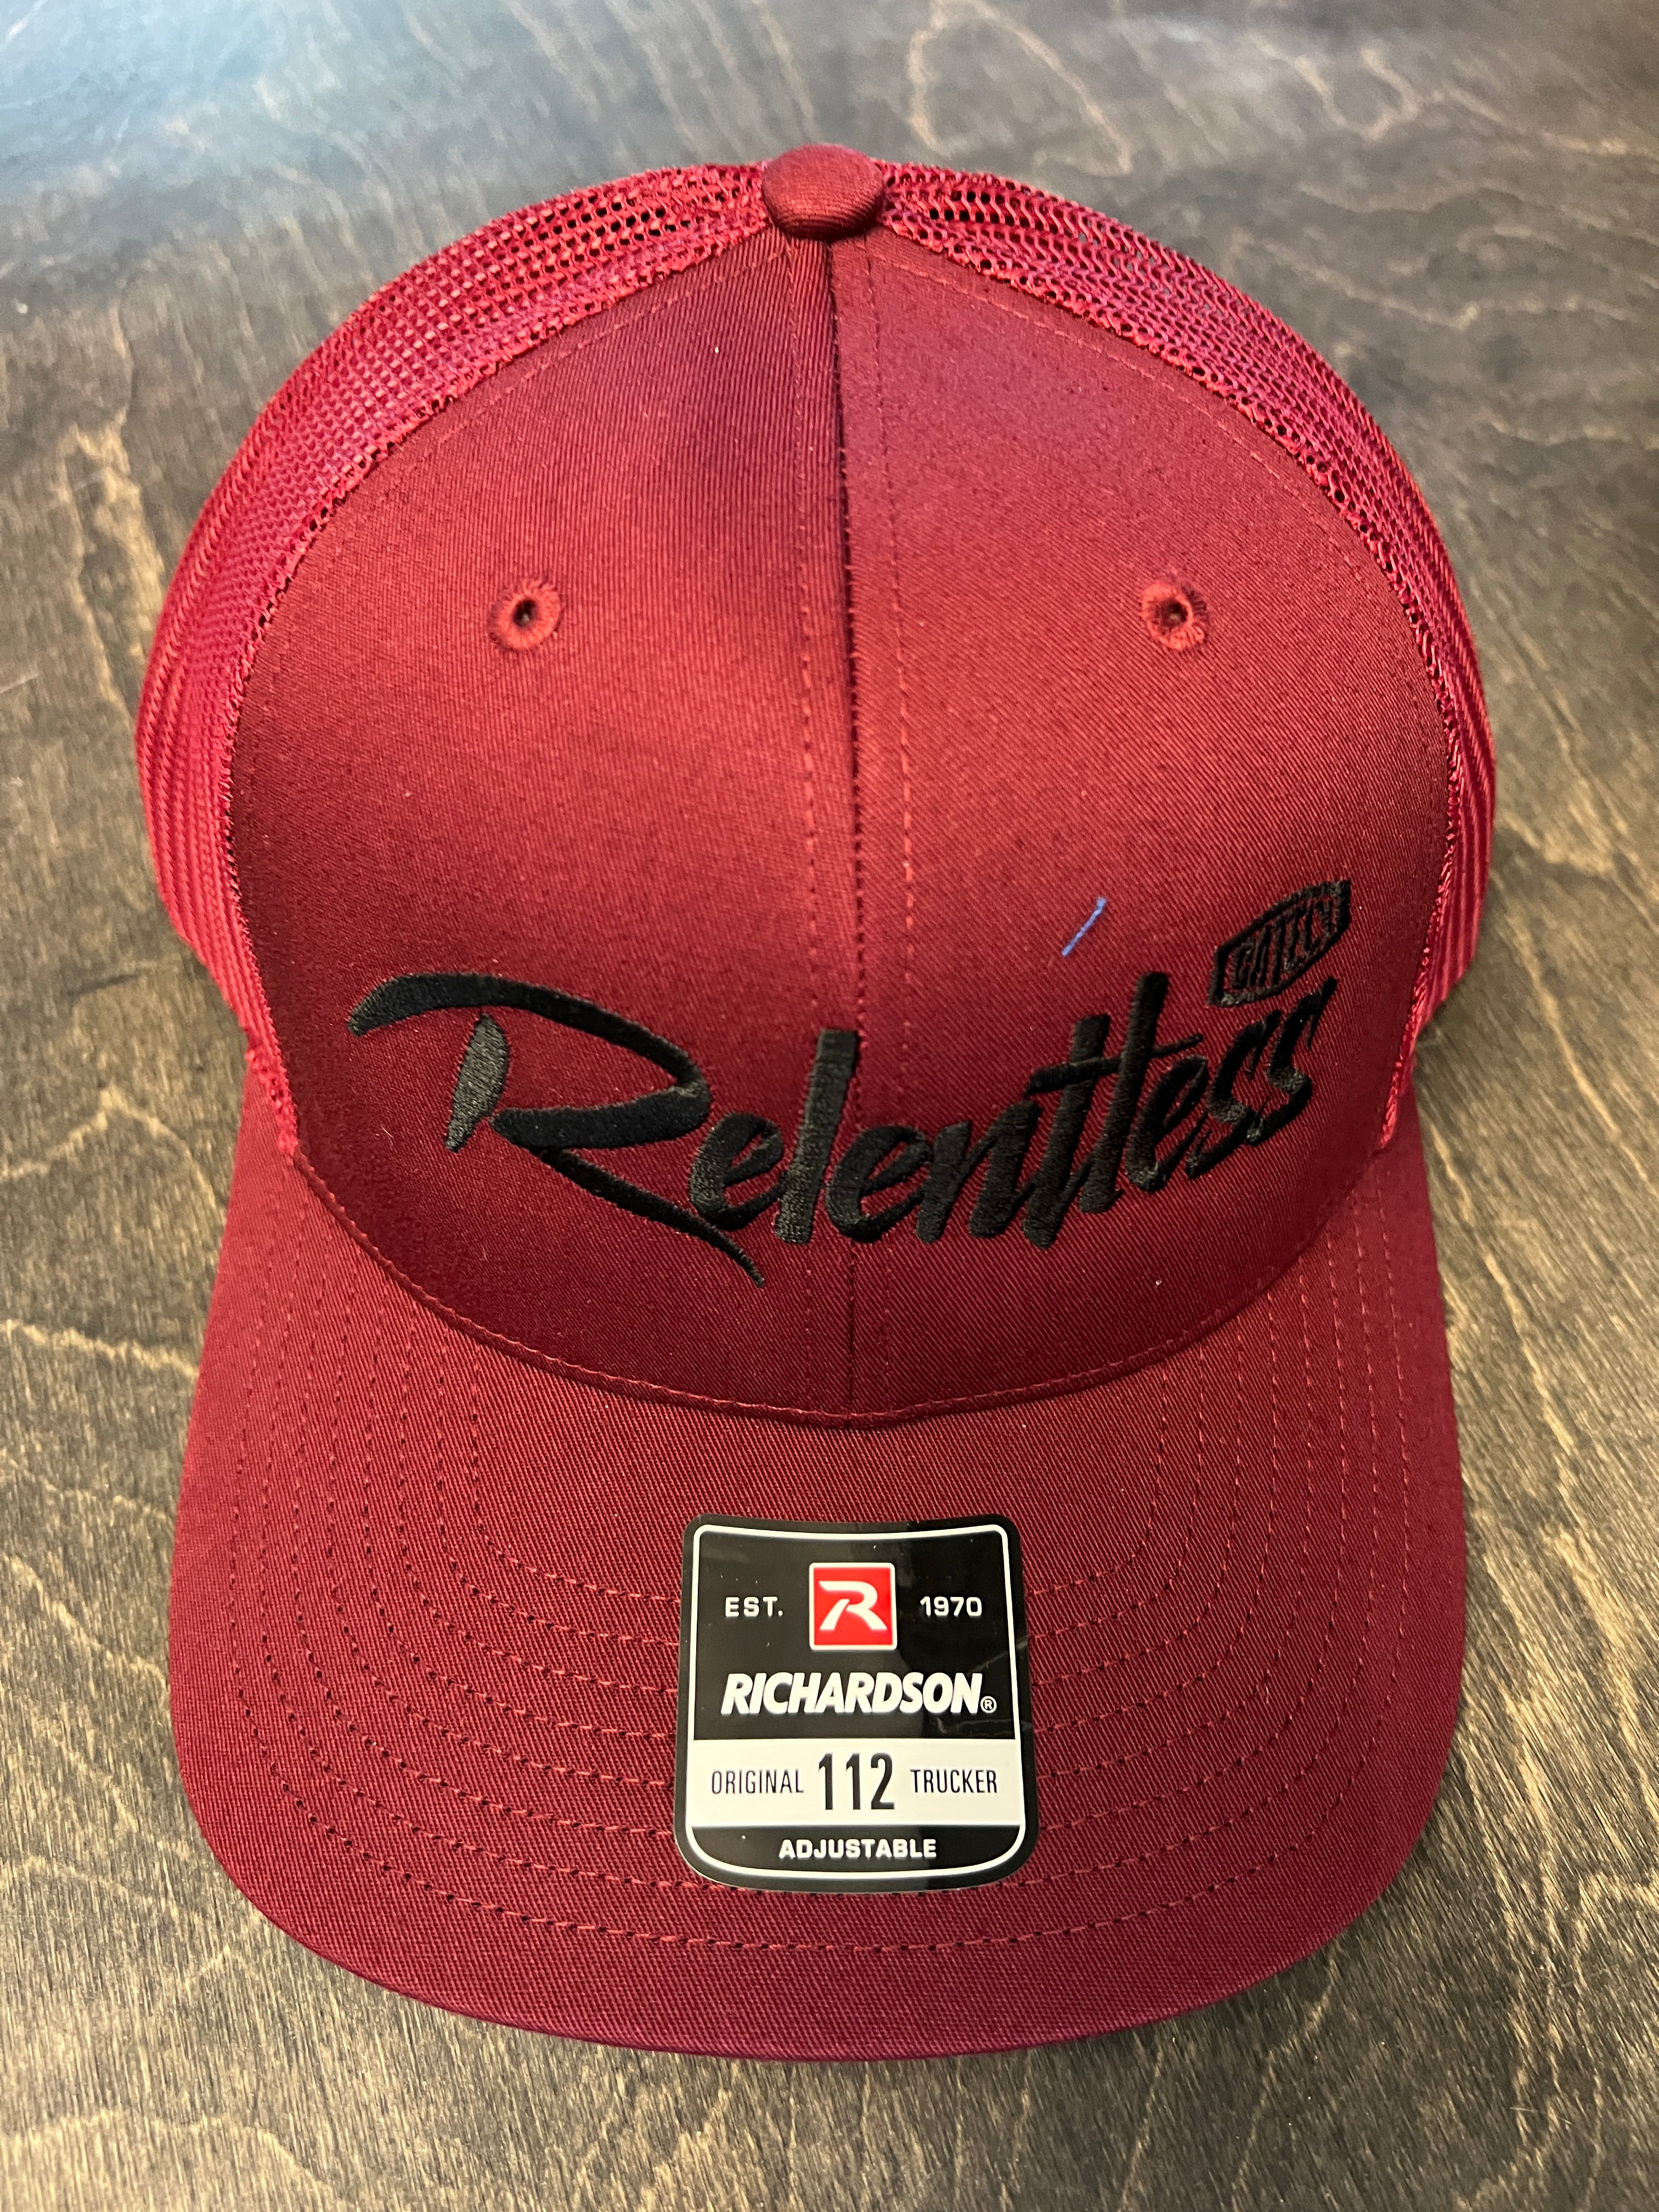 Relentless Hat